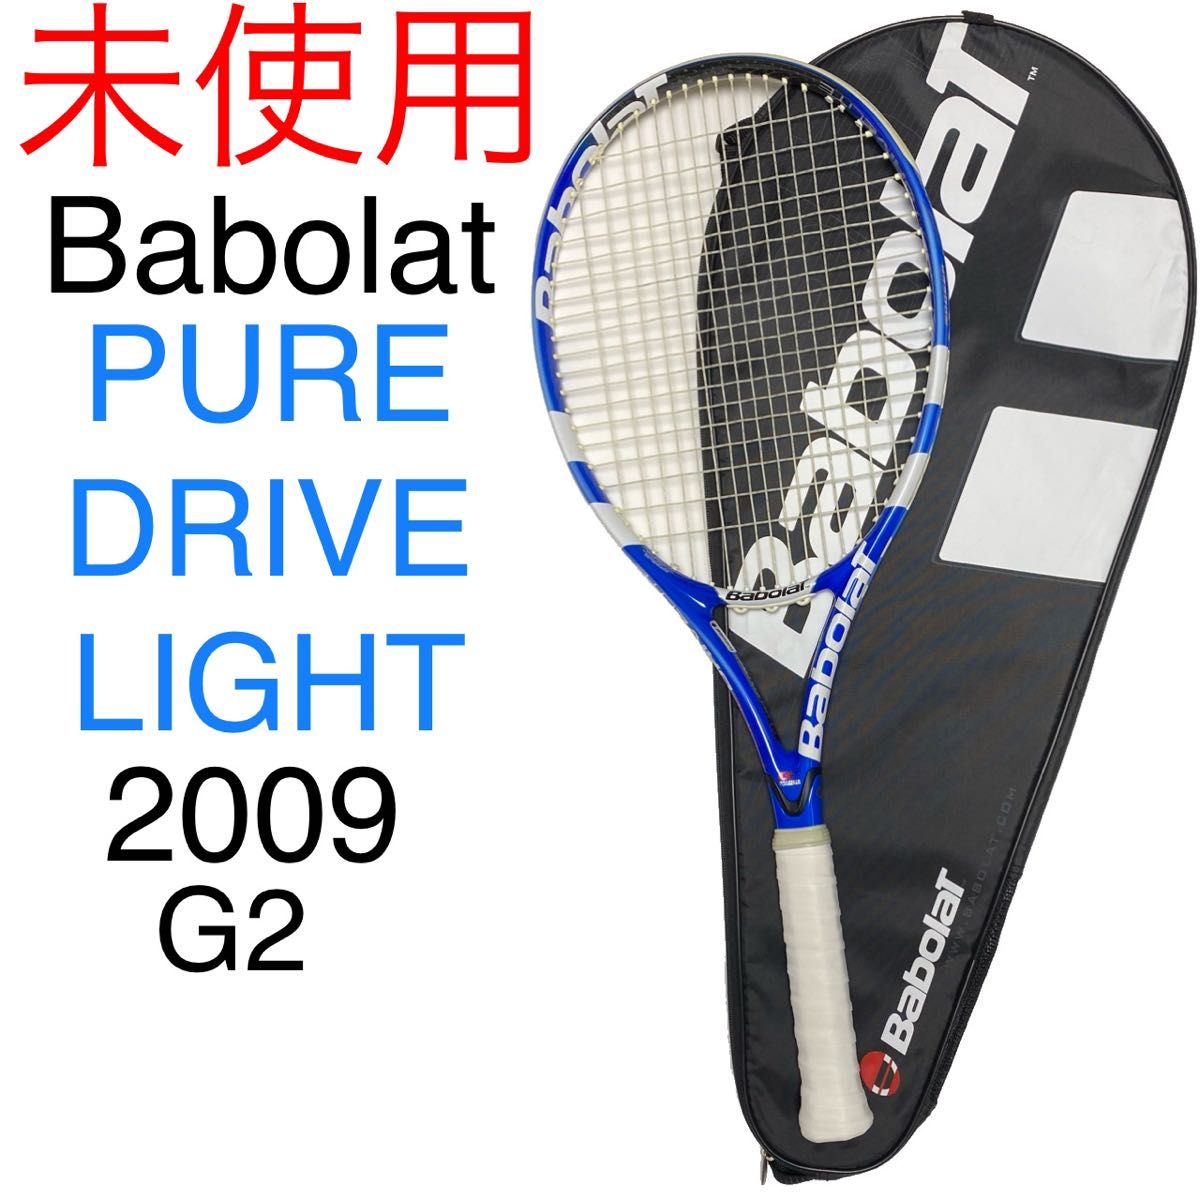 バボラ ピュアドライブ ライト 2009 Babolat PURE DRIVE LIGHT G2 未使用品 名器